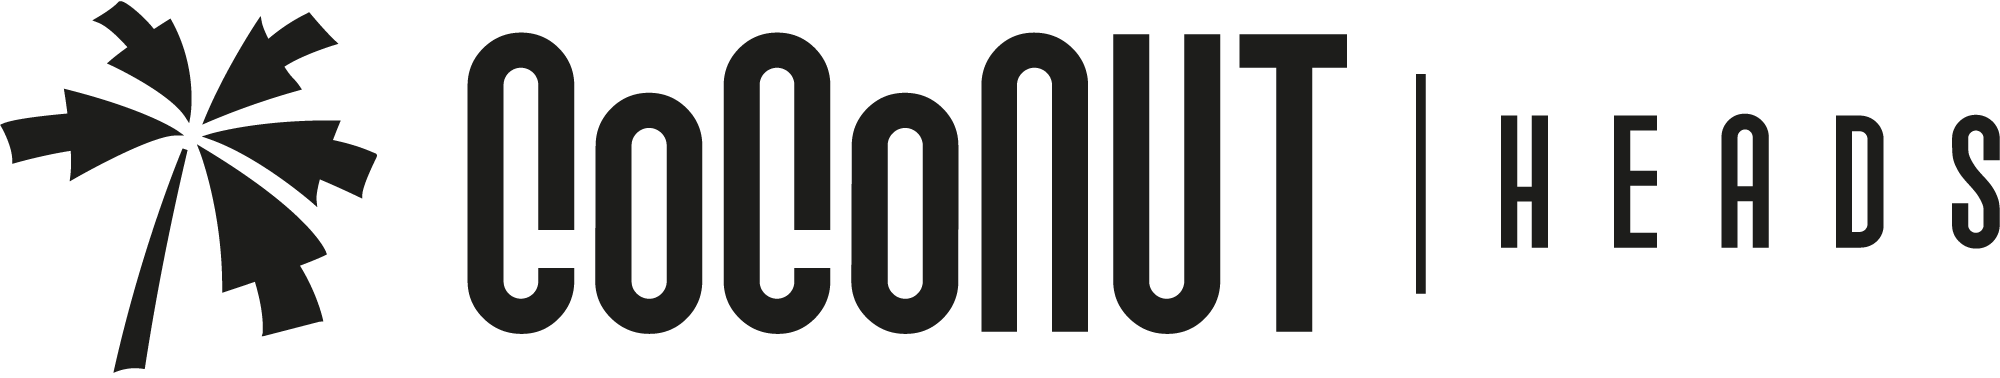 Logo Coconut Heads horizontal schwarz